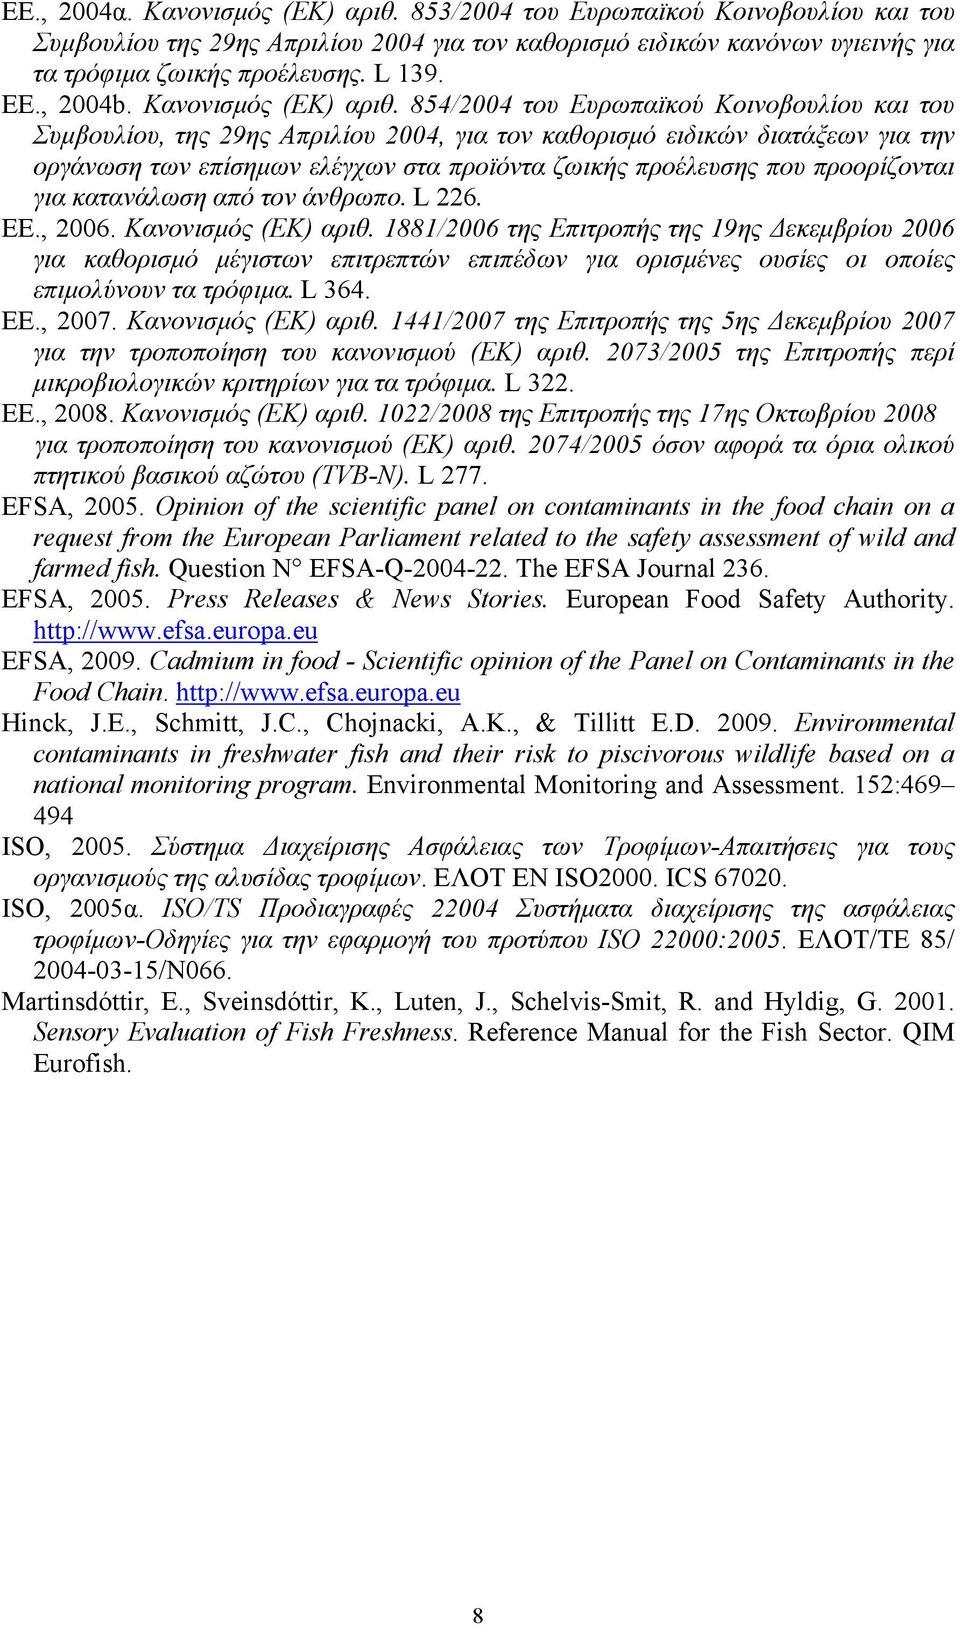 854/2004 του Ευρωπαϊκού Κοινοβουλίου και του Συμβουλίου, της 29ης Απριλίου 2004, για τον καθορισμό ειδικών διατάξεων για την οργάνωση των επίσημων ελέγχων στα προϊόντα ζωικής προέλευσης που